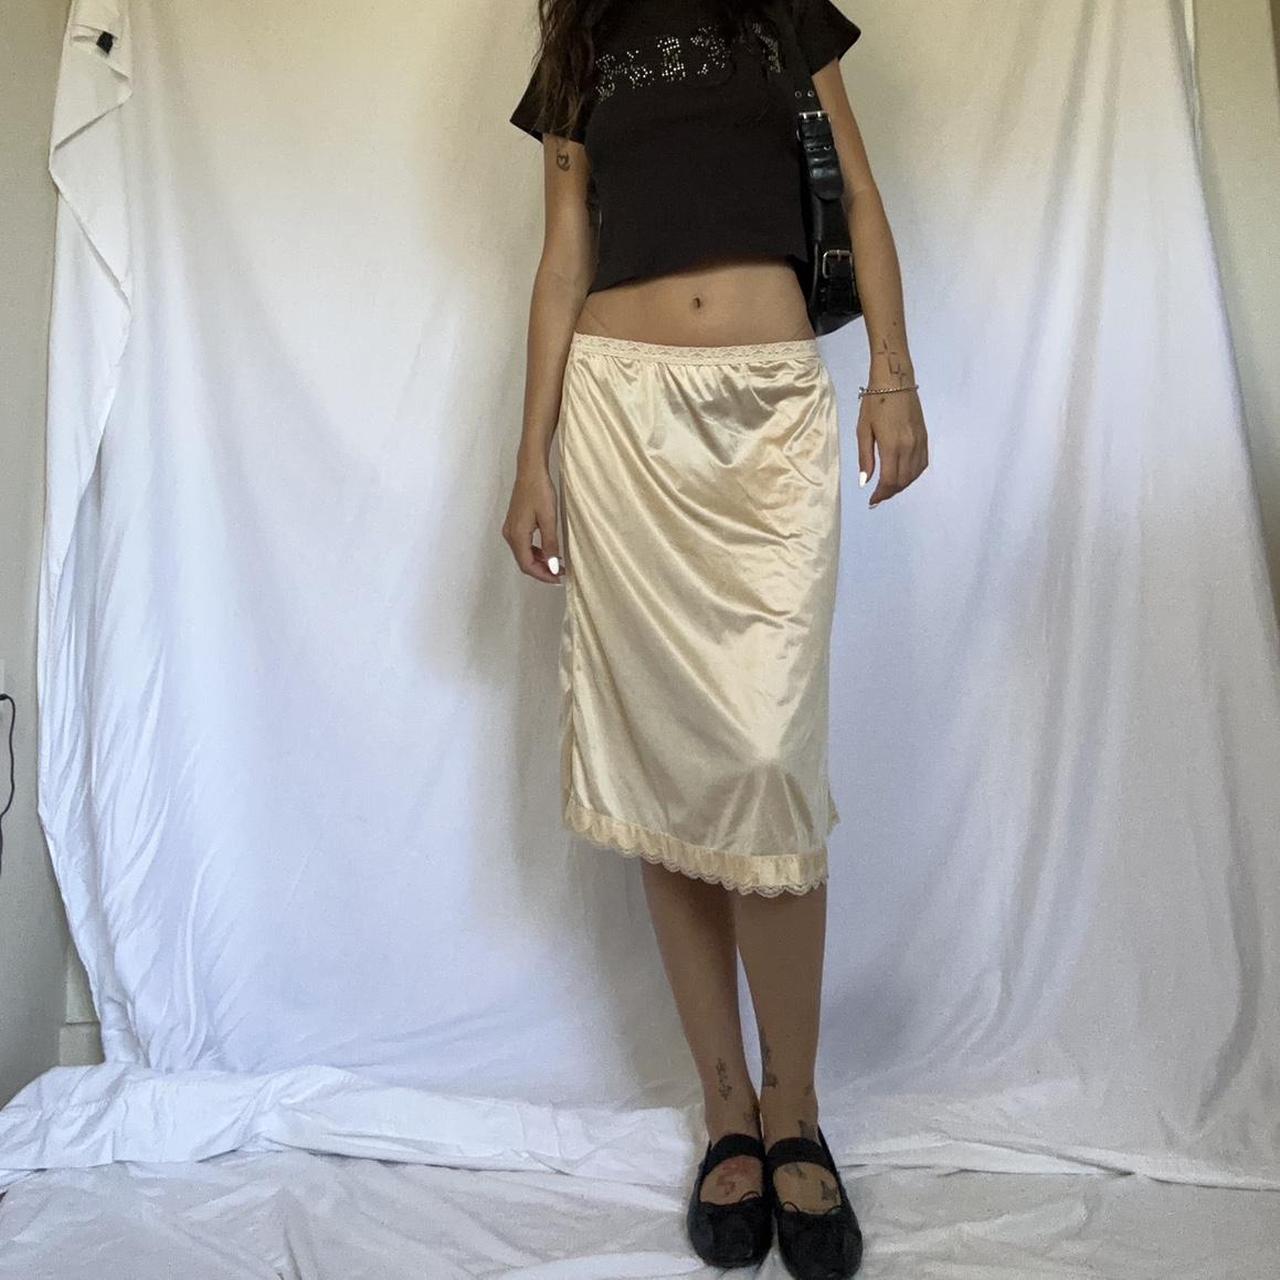 Vintage sheer satin slip skirt with side slit - - Depop